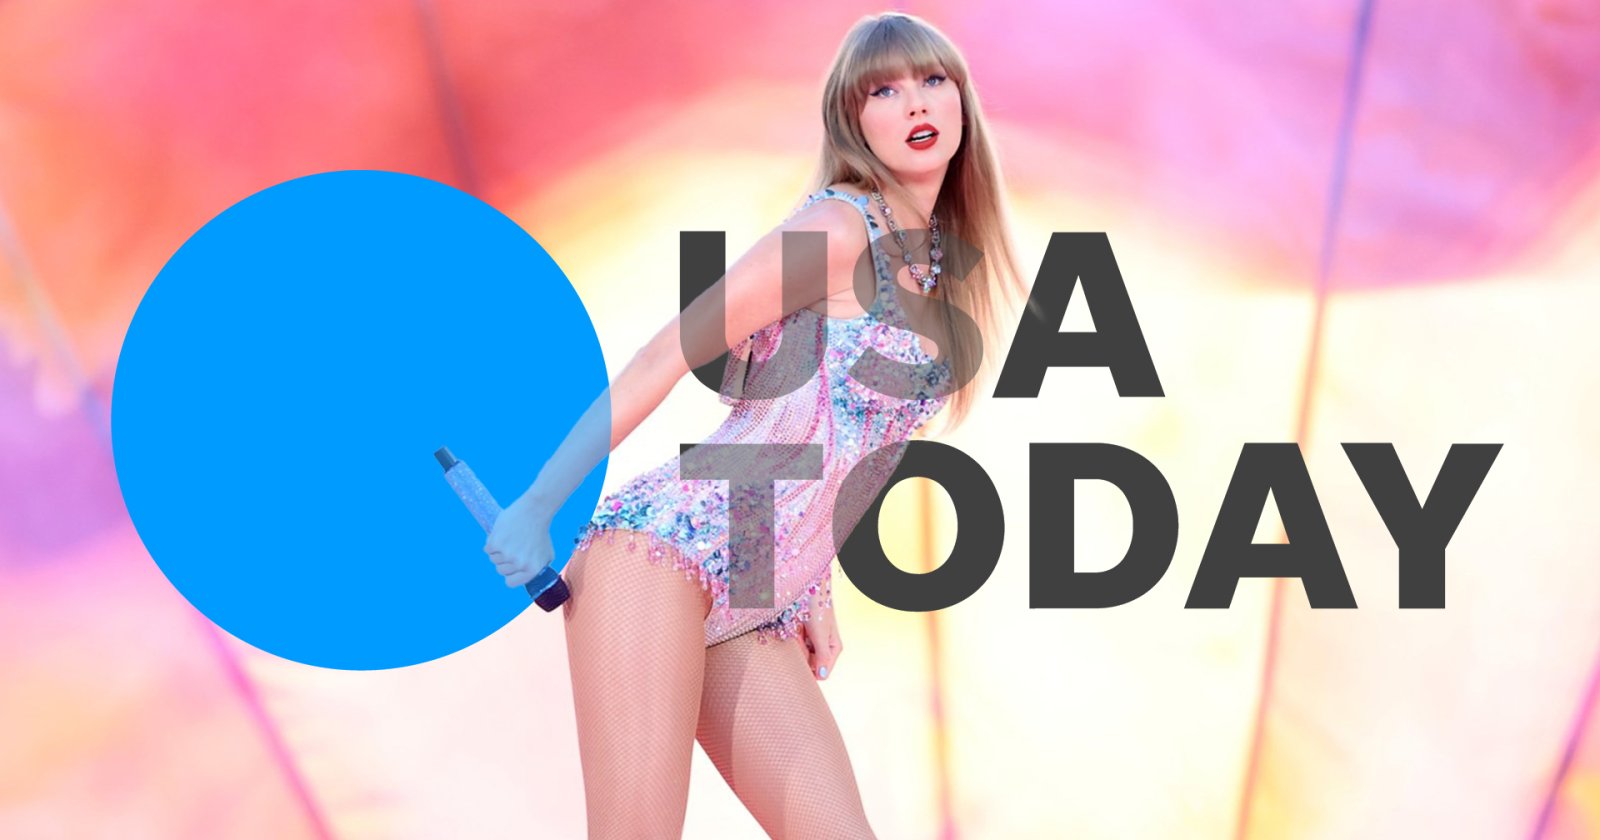 สวิฟตี้สนไหม ? USA Today เปิดรับสมัครนักข่าวสาย Taylor Swift ผลิตคอนเทนต์คอนเสิร์ต ‘The Eras Tour’